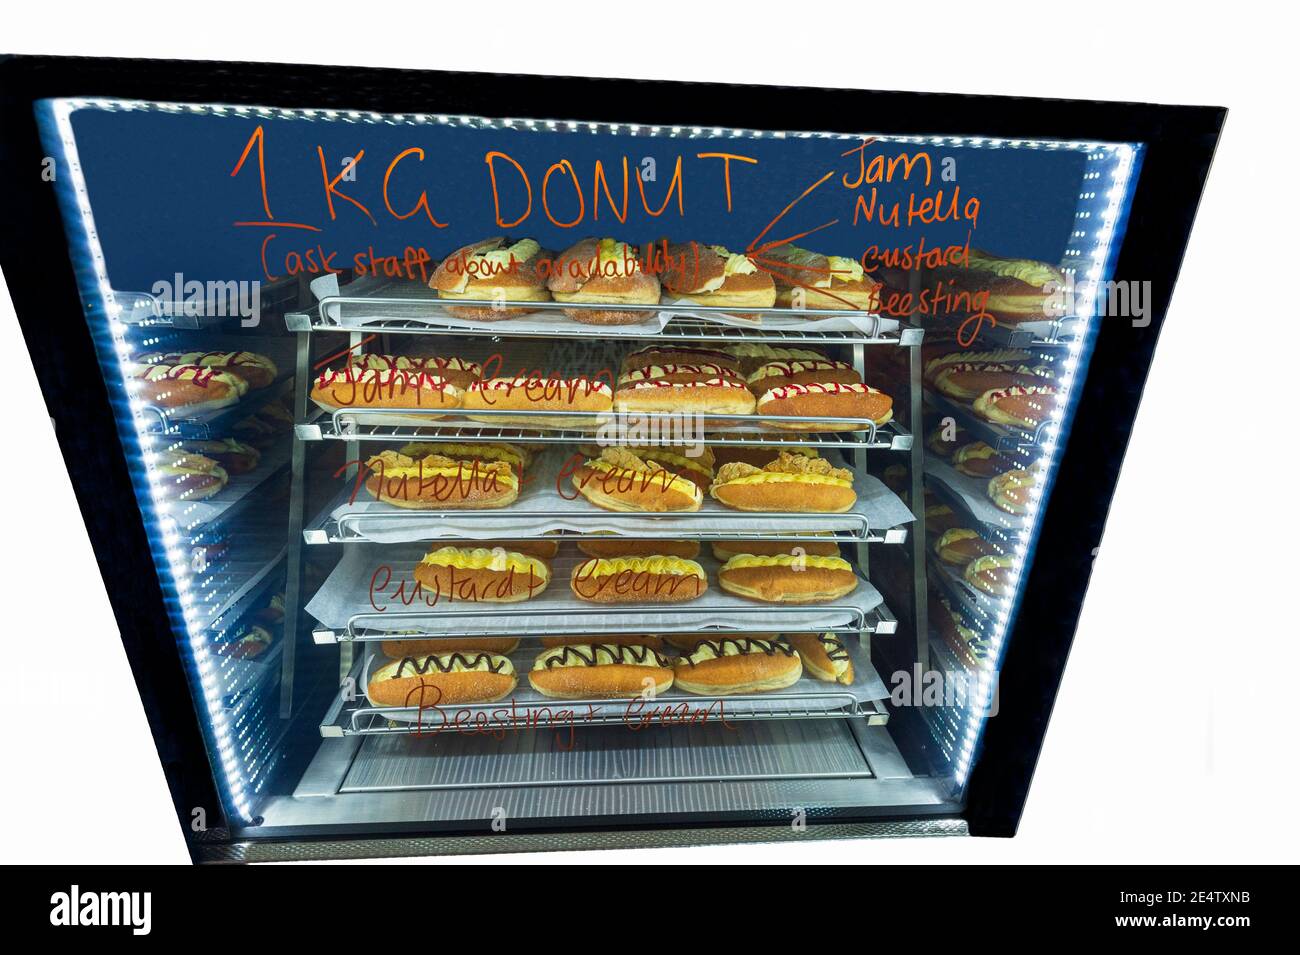 Armario con 1 kilo de donuts para una competición de alimentación, Kenilworth Country Bakery, sudeste de Queensland, Queensland, Australia Foto de stock